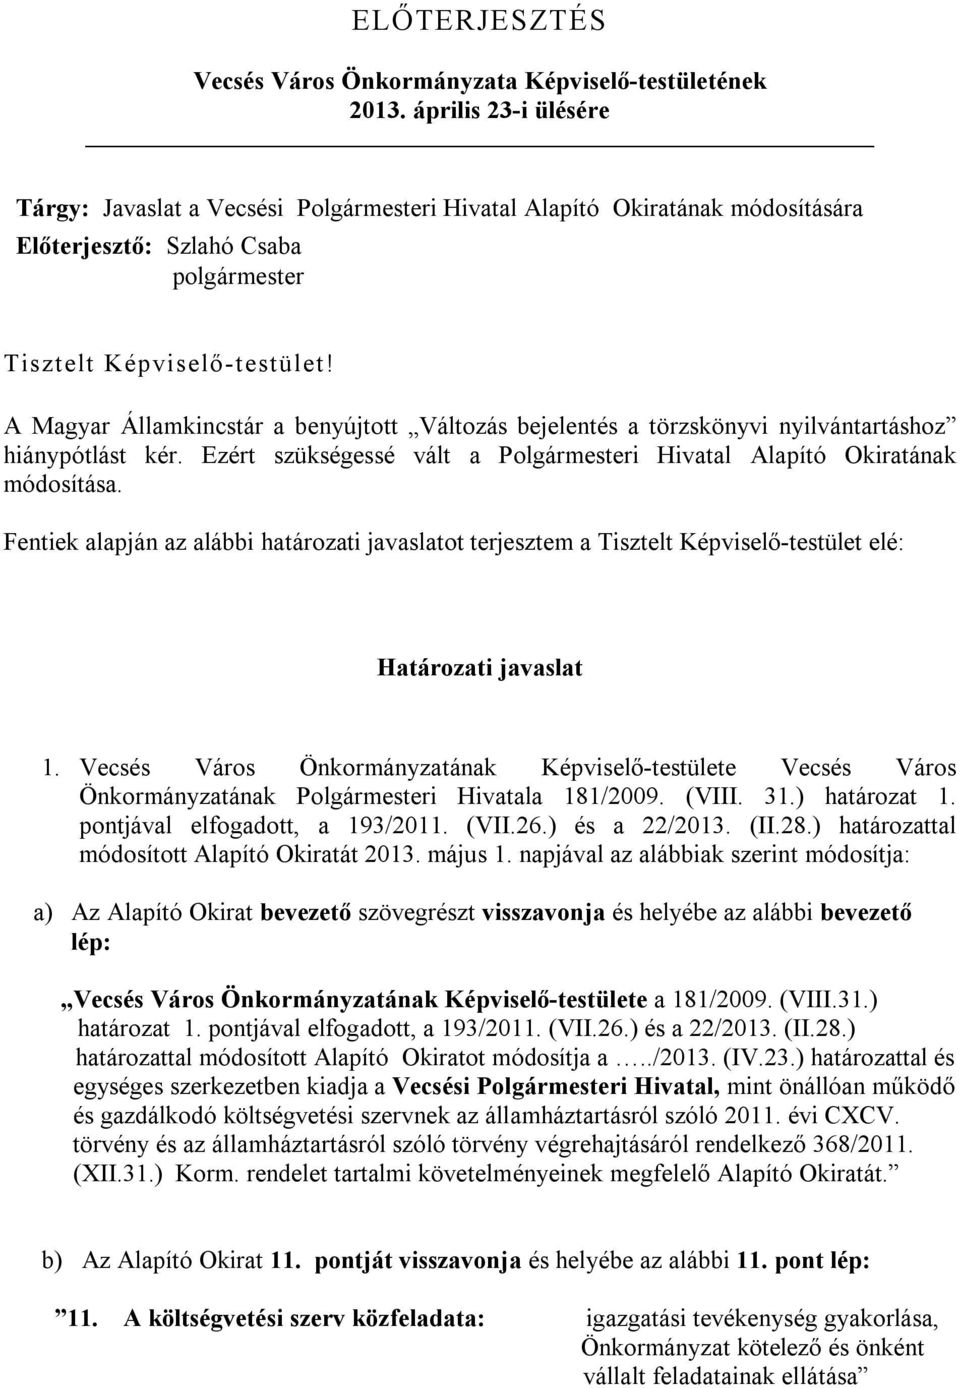 A Magyar Államkincstár a benyújtott Változás bejelentés a törzskönyvi nyilvántartáshoz hiánypótlást kér. Ezért szükségessé vált a Polgármesteri Hivatal Alapító Okiratának módosítása.